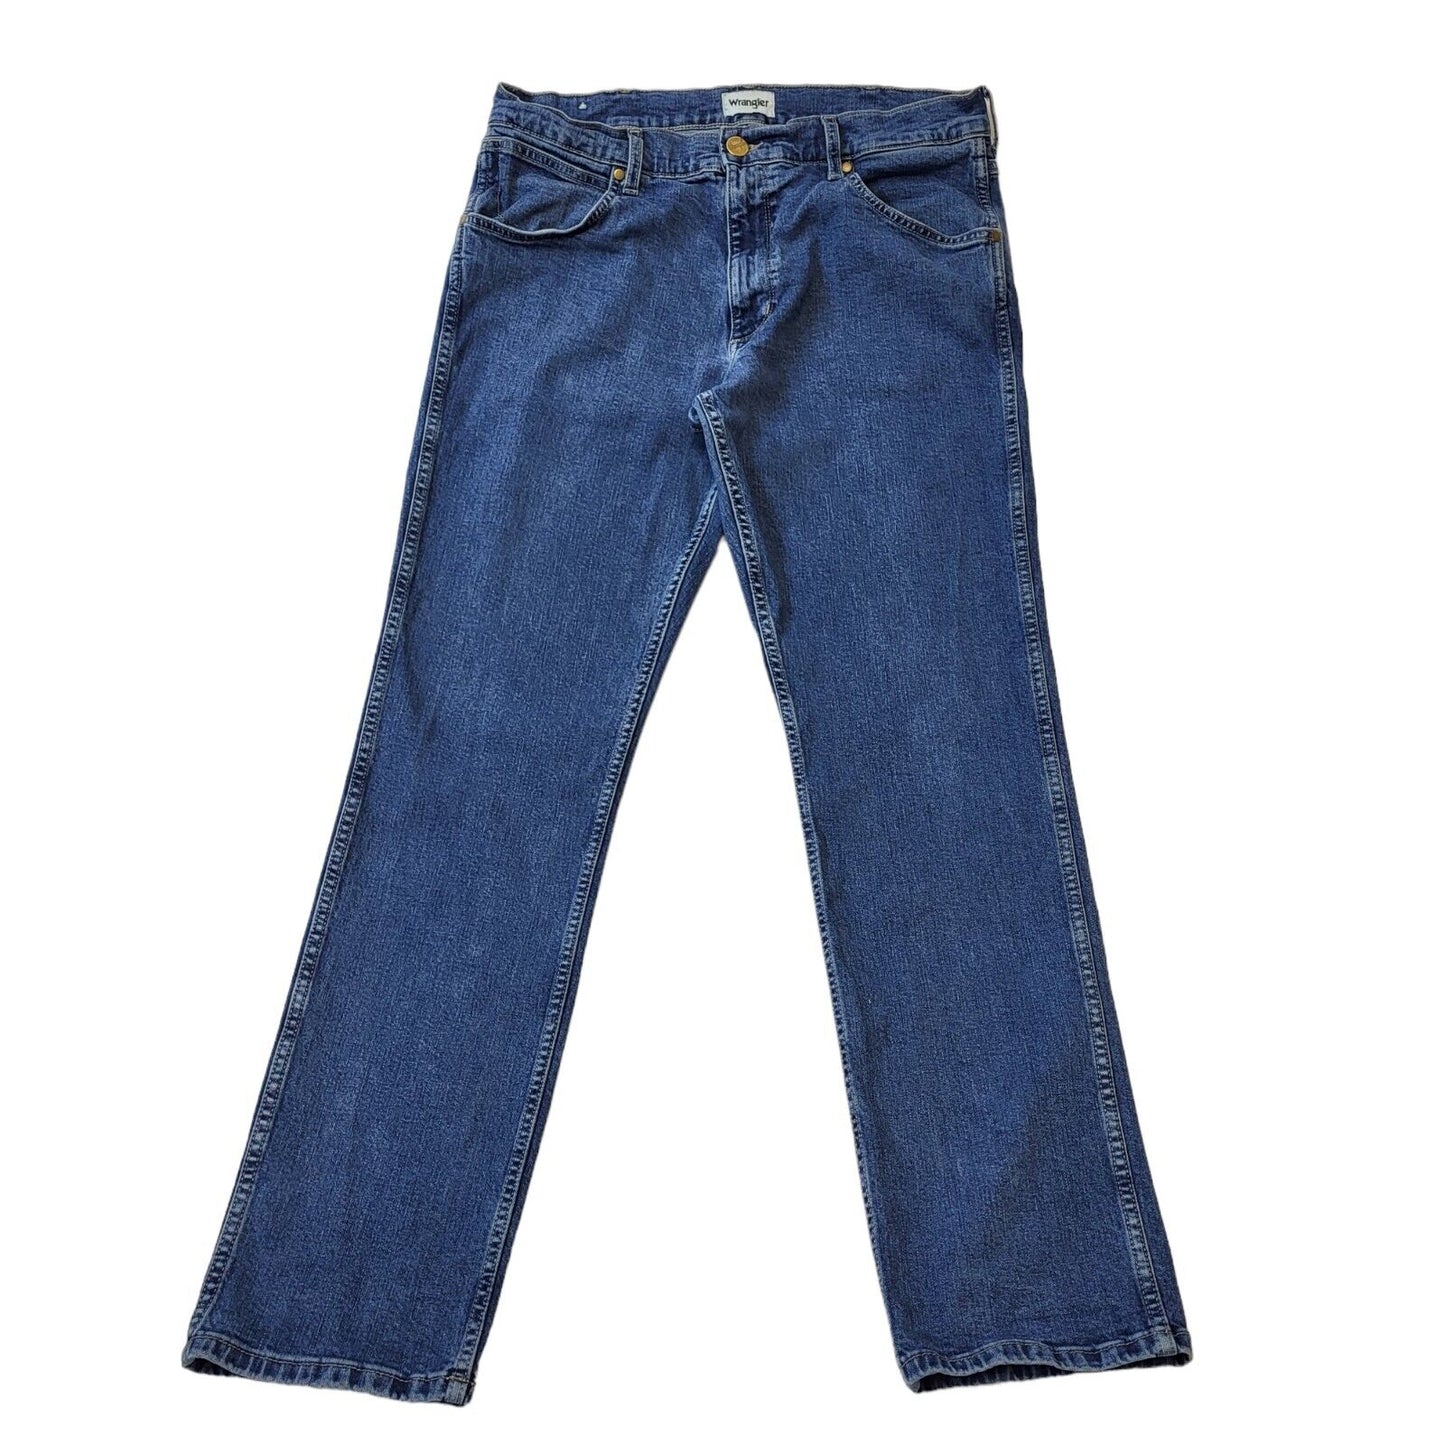 Wrangler Jeans (XL)